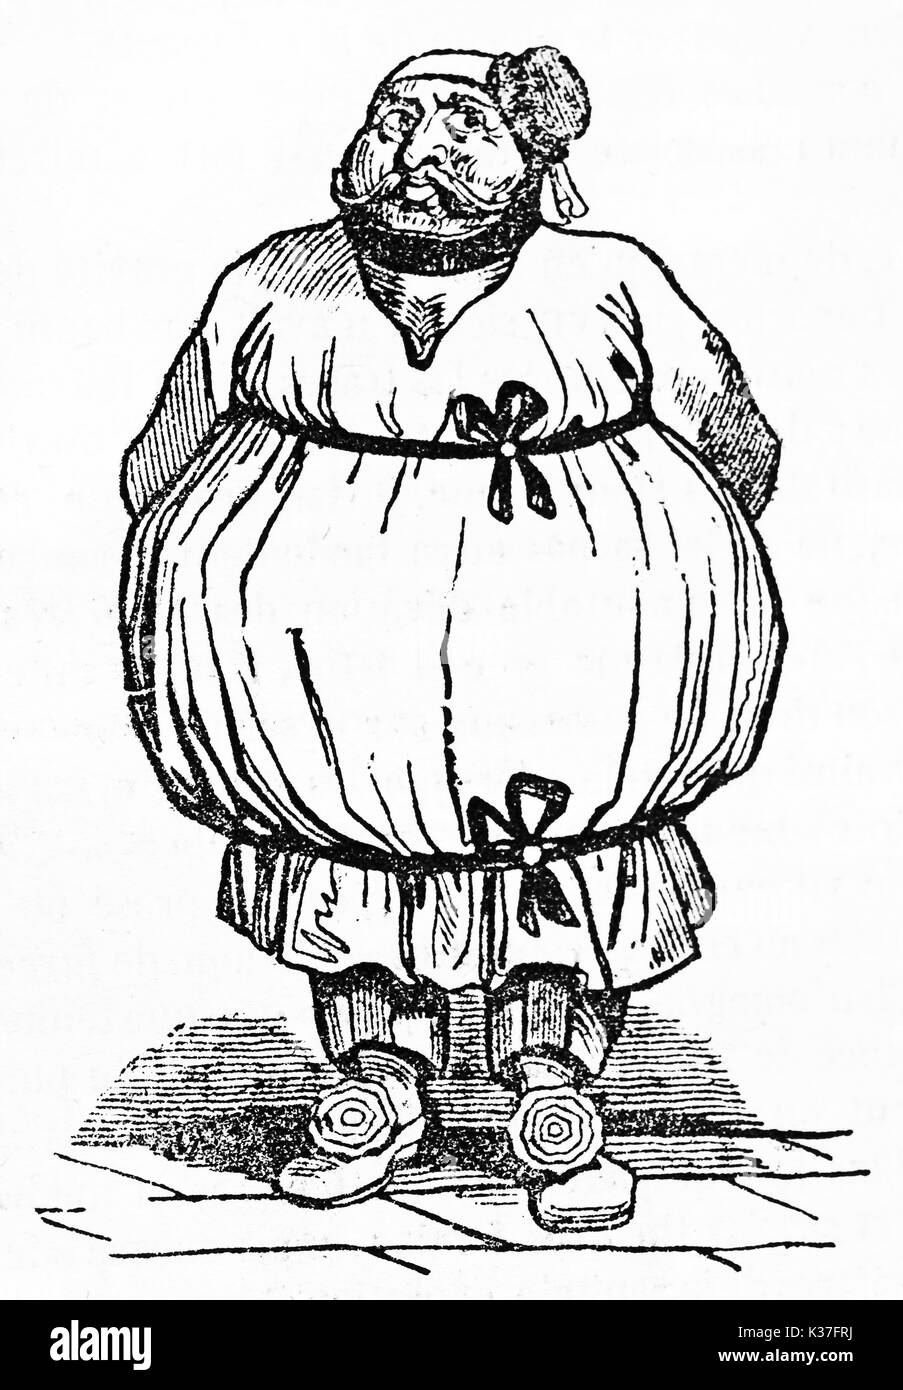 Voller Körper alten lustig Porträt eines fetten Mann, der antiken Kleidung, Gros-Guillaume, französischer Schauspieler. Alte Illustration von unbekannter Autor auf Magasin Pittoresque Paris 1834 veröffentlicht. Stockfoto